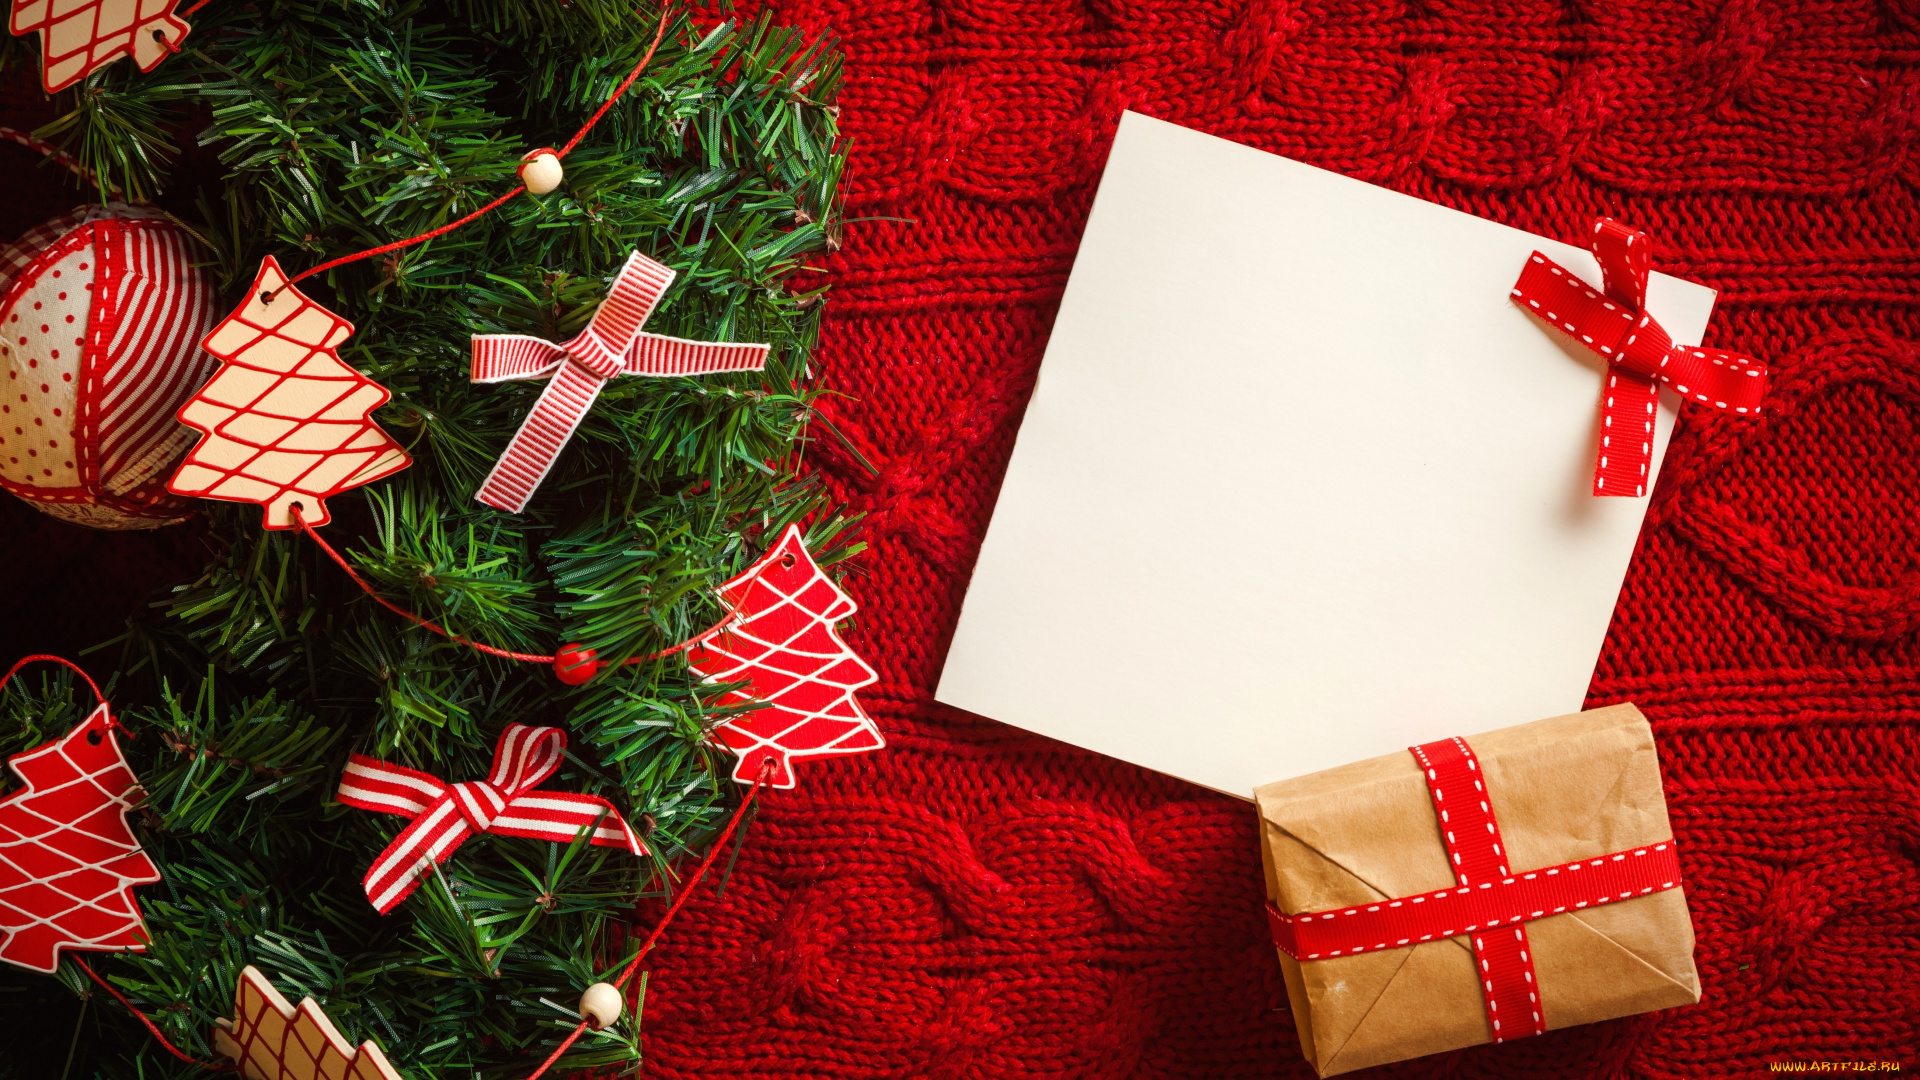 праздничные, разное, новый, год, box, ленты, с, новым, годом, рождество, праздник, подарок, merry, christmas, holiday, decoration, tree, gifts, рождественская, елка, ribbon, happy, new, year, украшения